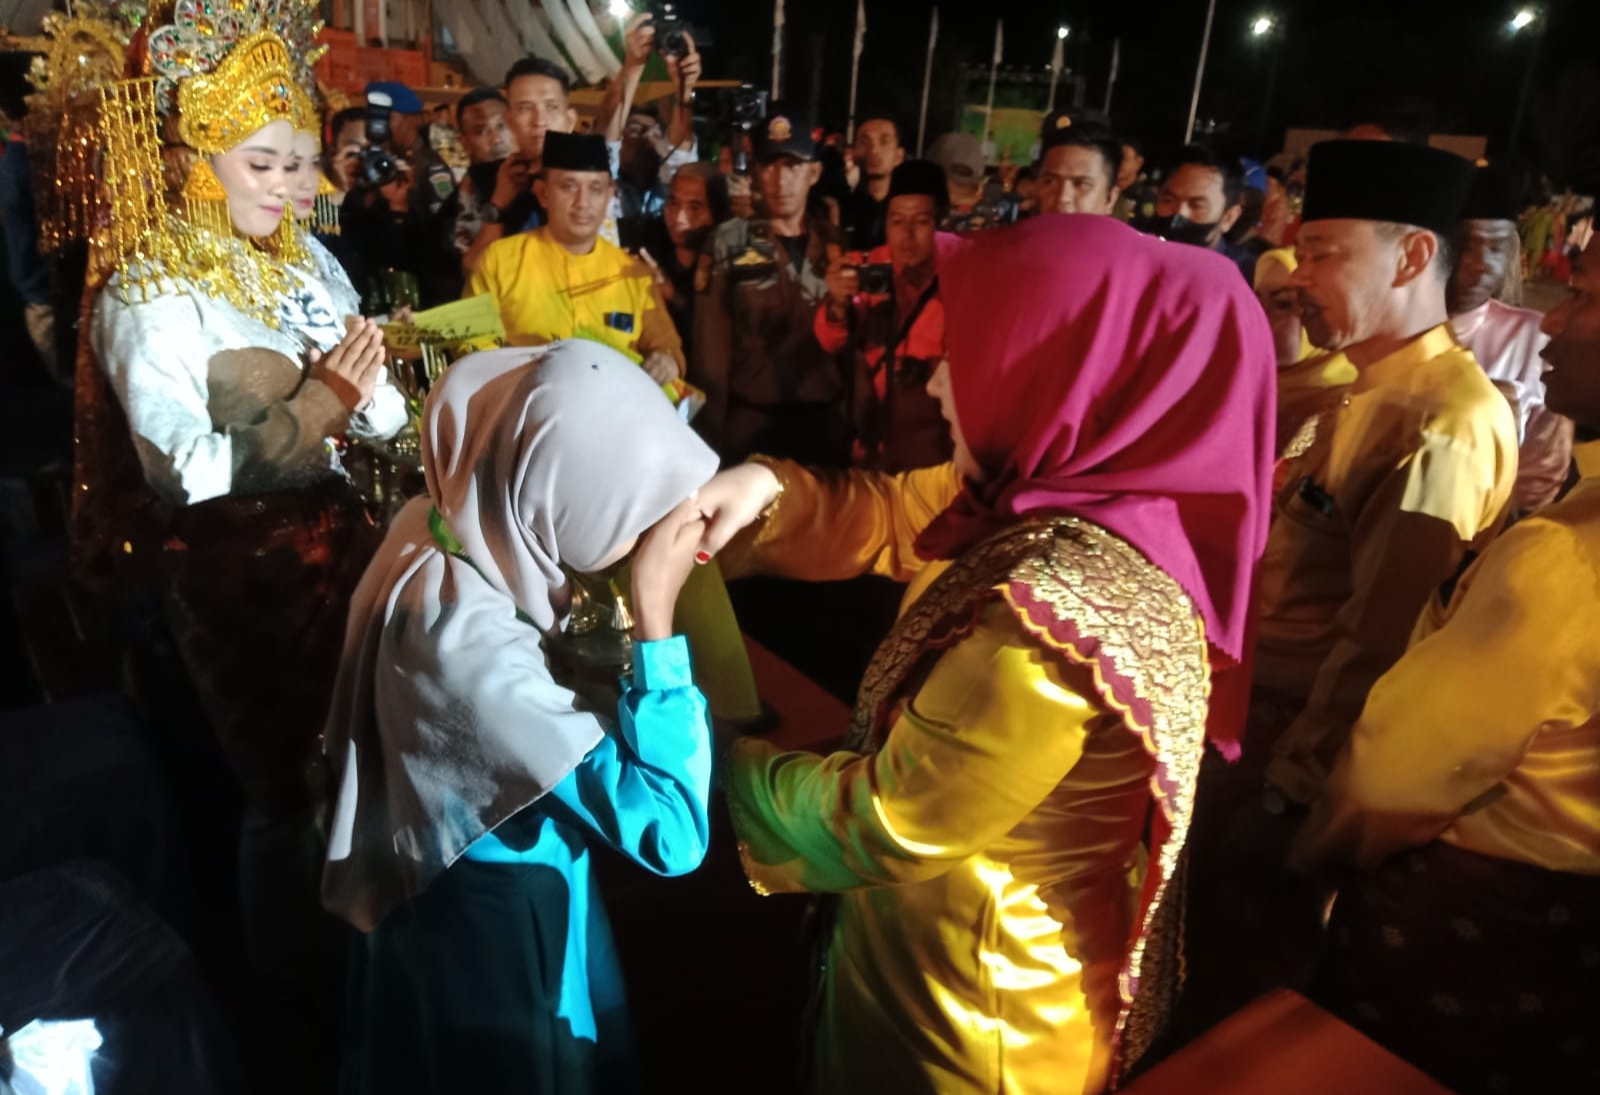 7 Peserta Jadi Juara Semua, Ketua LPTQ Riau : Meranti Hebat